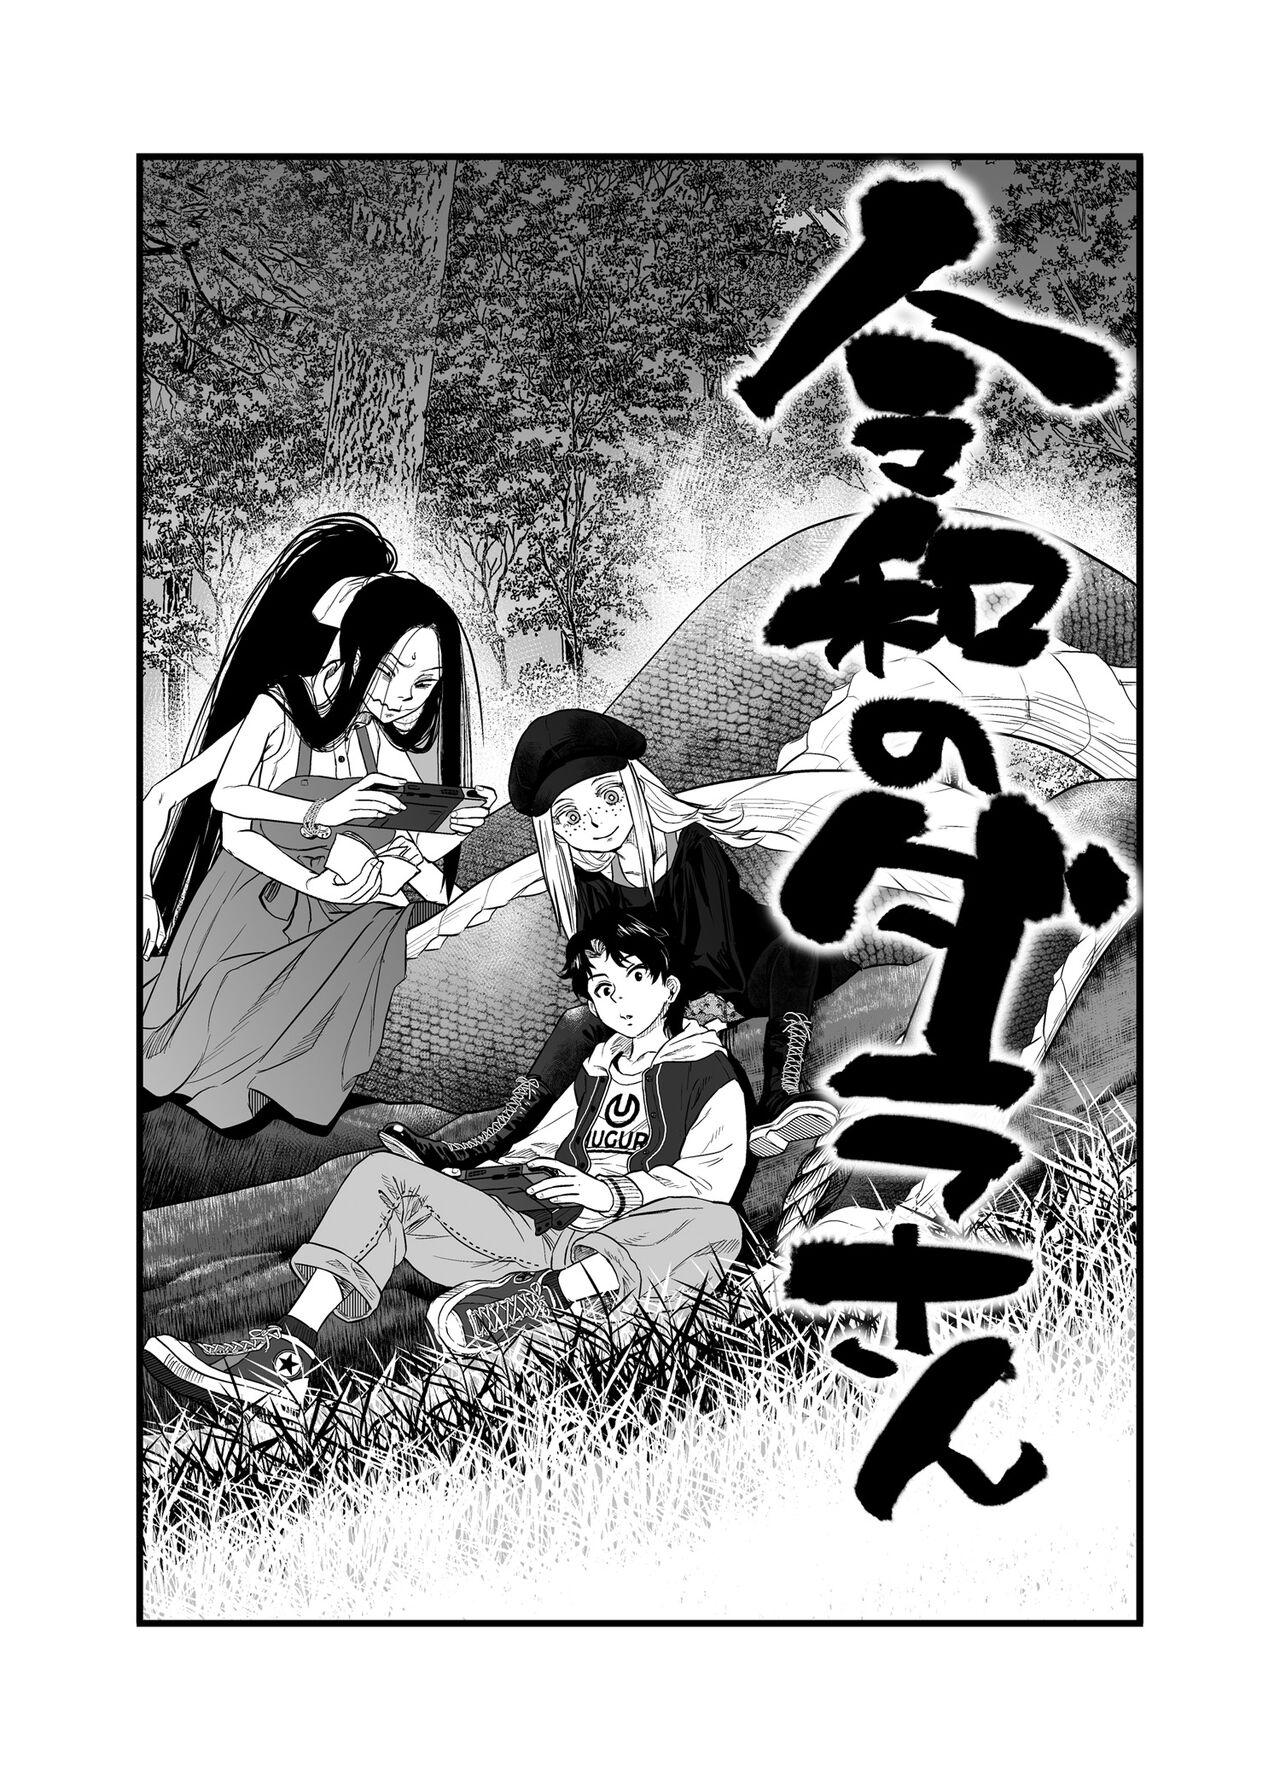 Art [Tomotsuka Haruomi] Reiwa no Dara-san R18 Version - Chapter 7 [English][Digital] - Original 1080p - Page 1